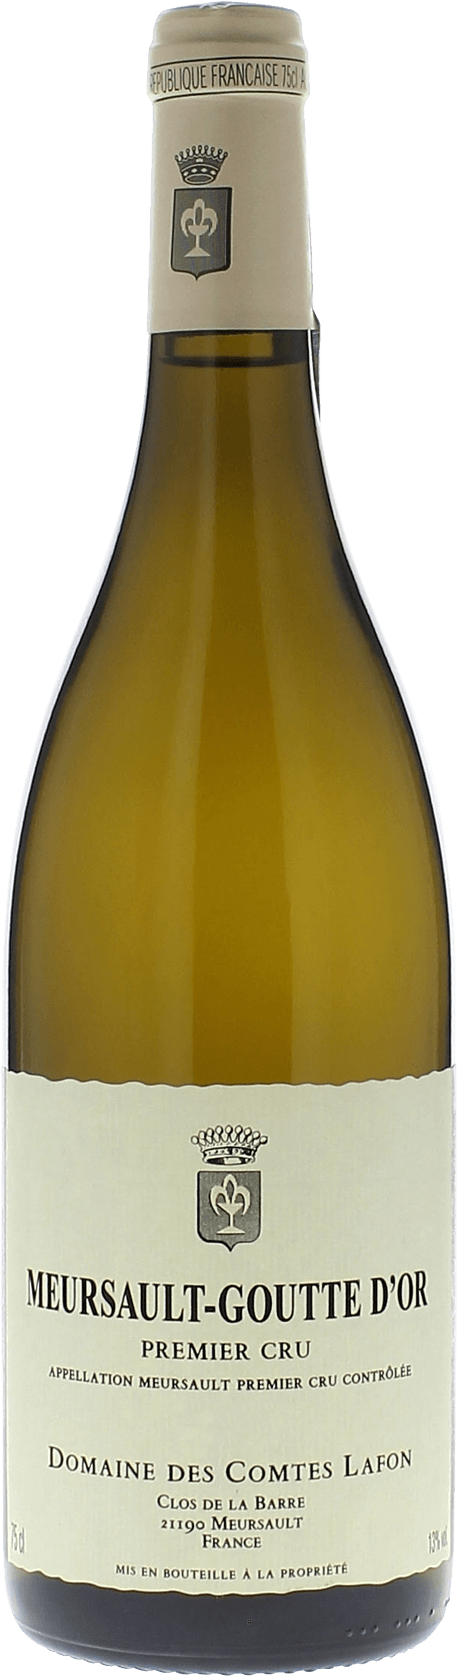 Meursault goutte d'or 1er cru 2016 Domaine Comtes LAFON, Bourgogne blanc